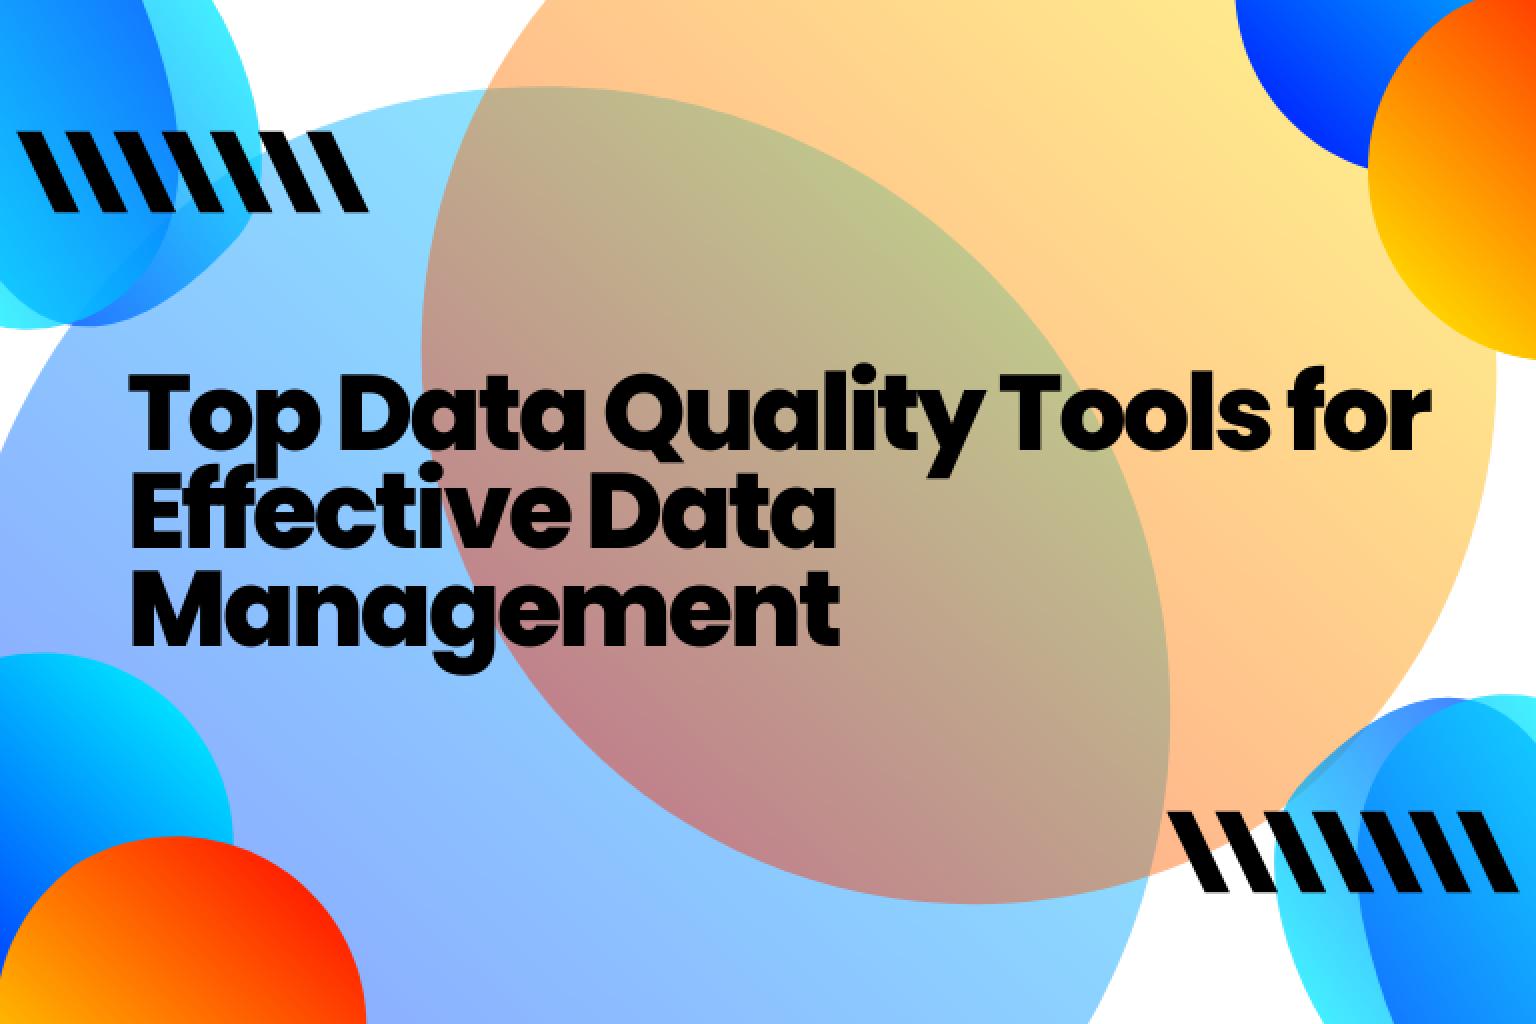 最高のデータ品質ツールを見つけて、データの正確性、完全性、一貫性を確保し、より多くの情報に基づいた決定を下してください。